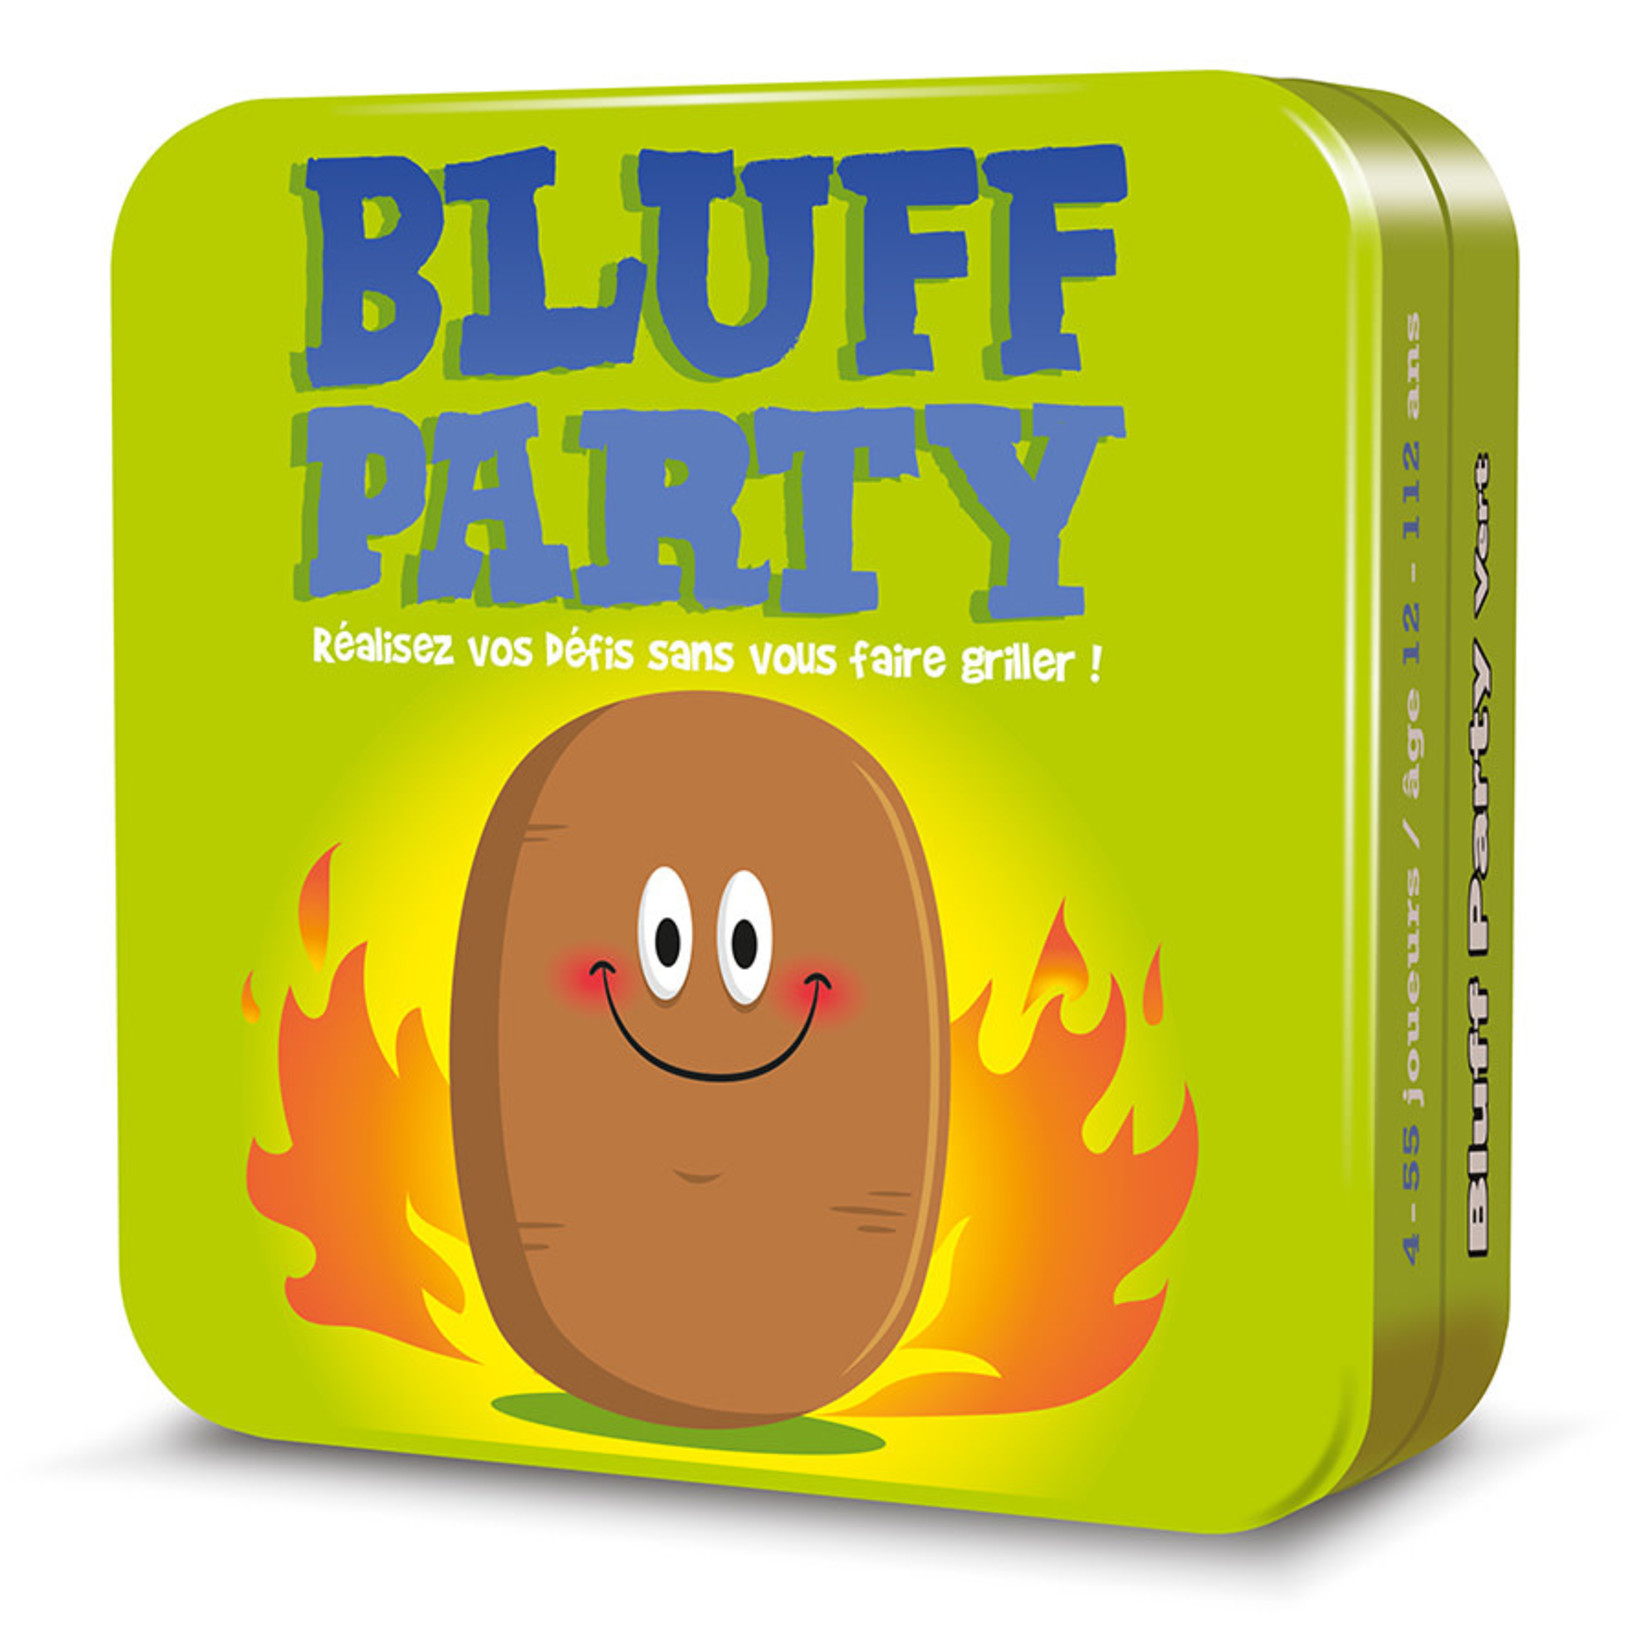 Bluff party – vert